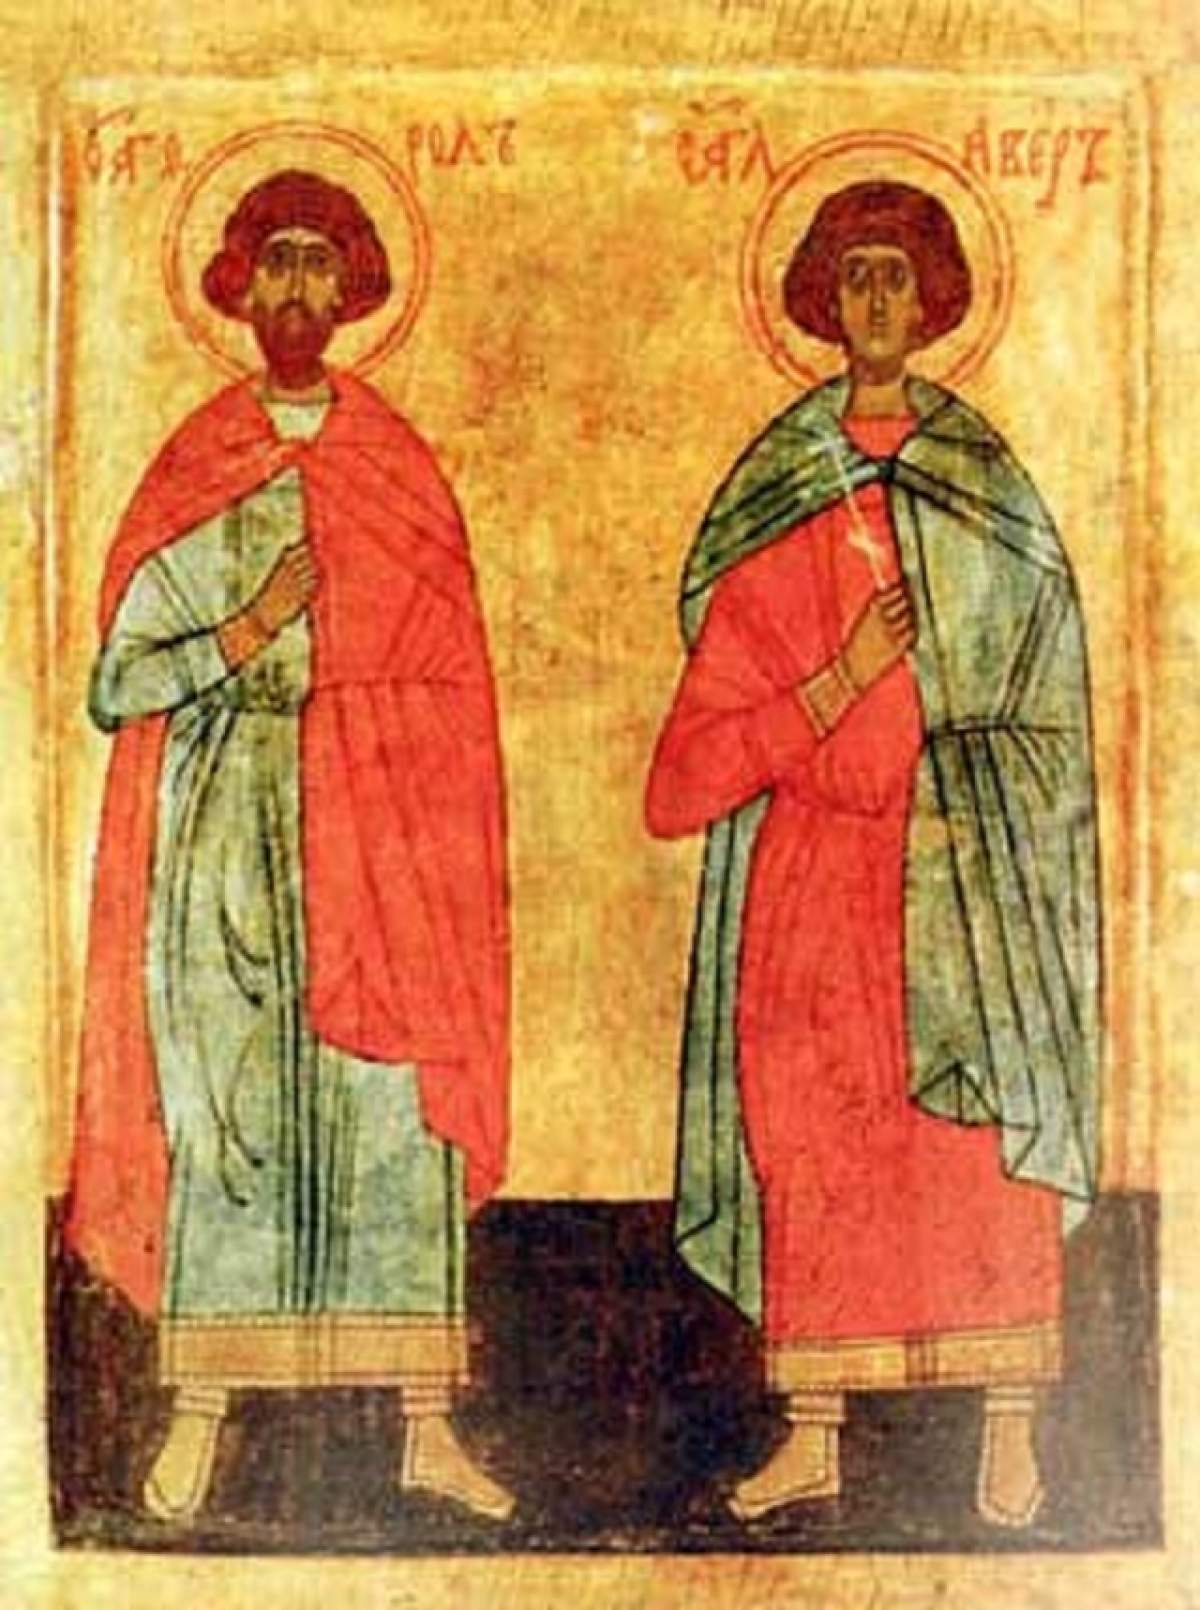 Sfinții Mucenici Flor și Lavru sunt pomeniți în calendarul creștin ortodox la 18 august